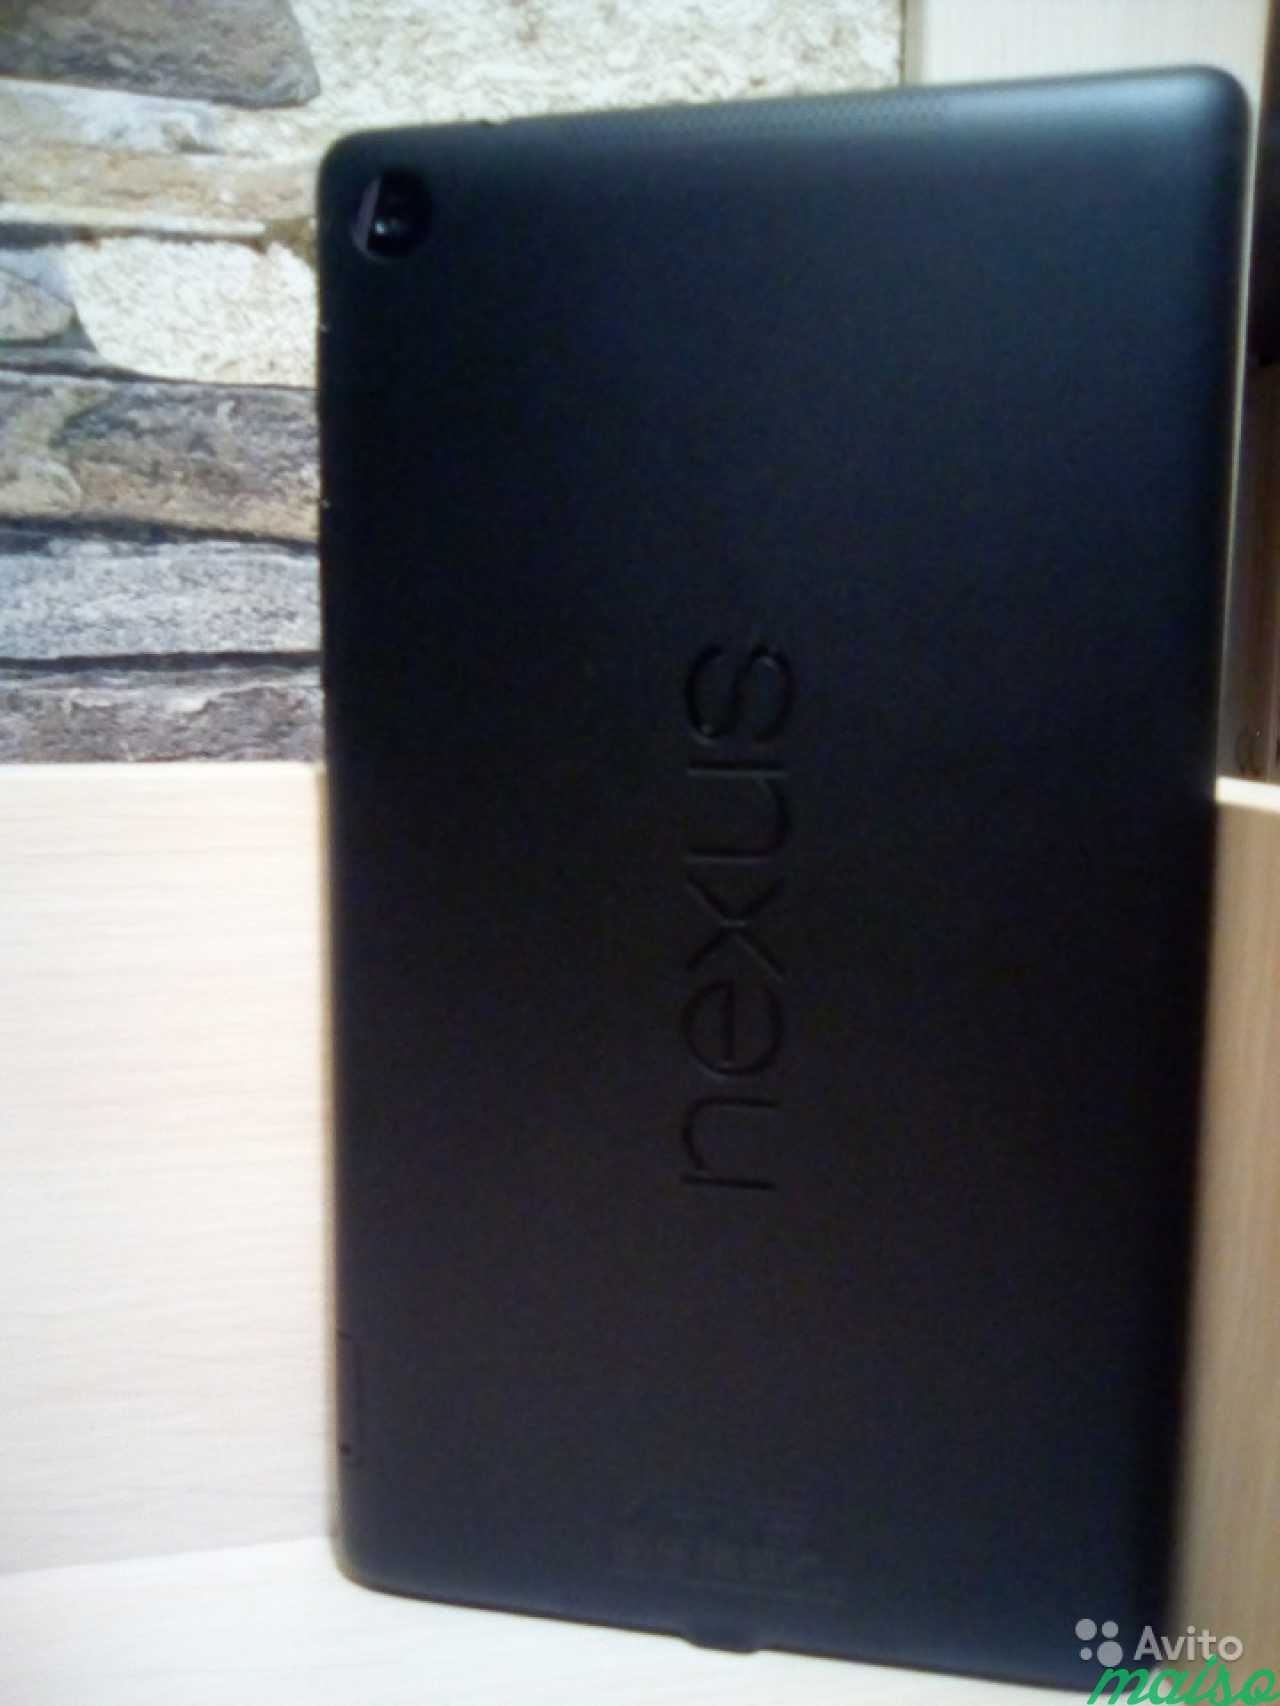 Планшет Asus Nexus 7, 32 гб (2013 г.) в Санкт-Петербурге. Фото 2